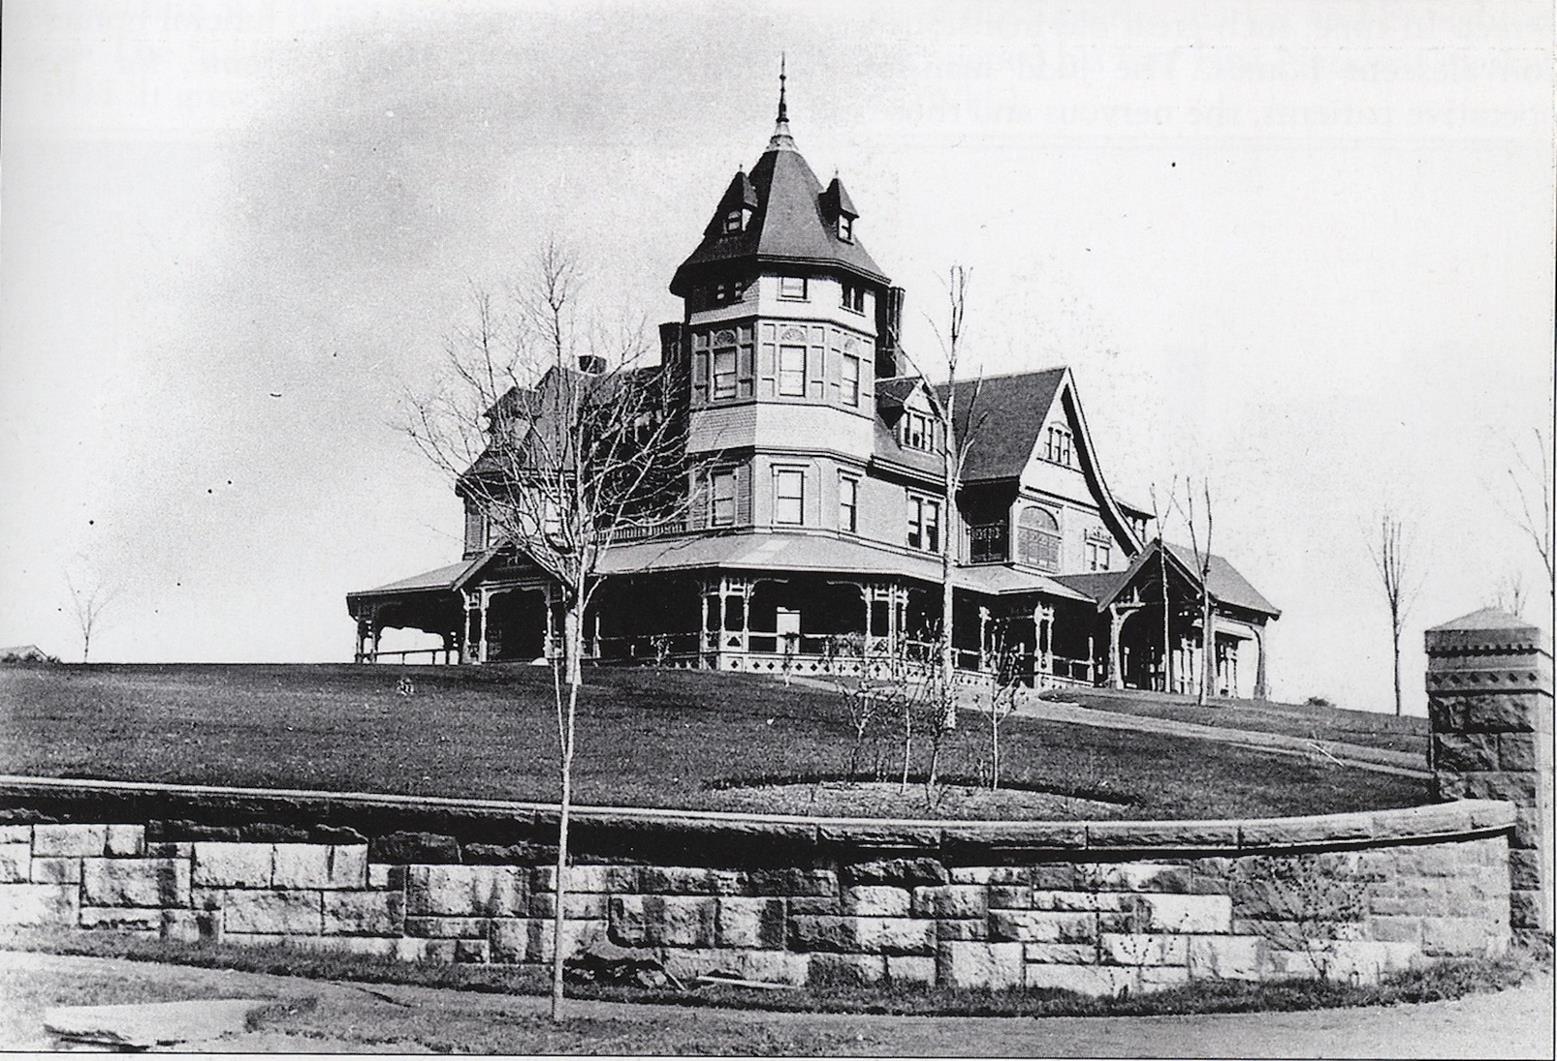 A Lost Vanderbilt Mansion in West Hartford, Connecticut 